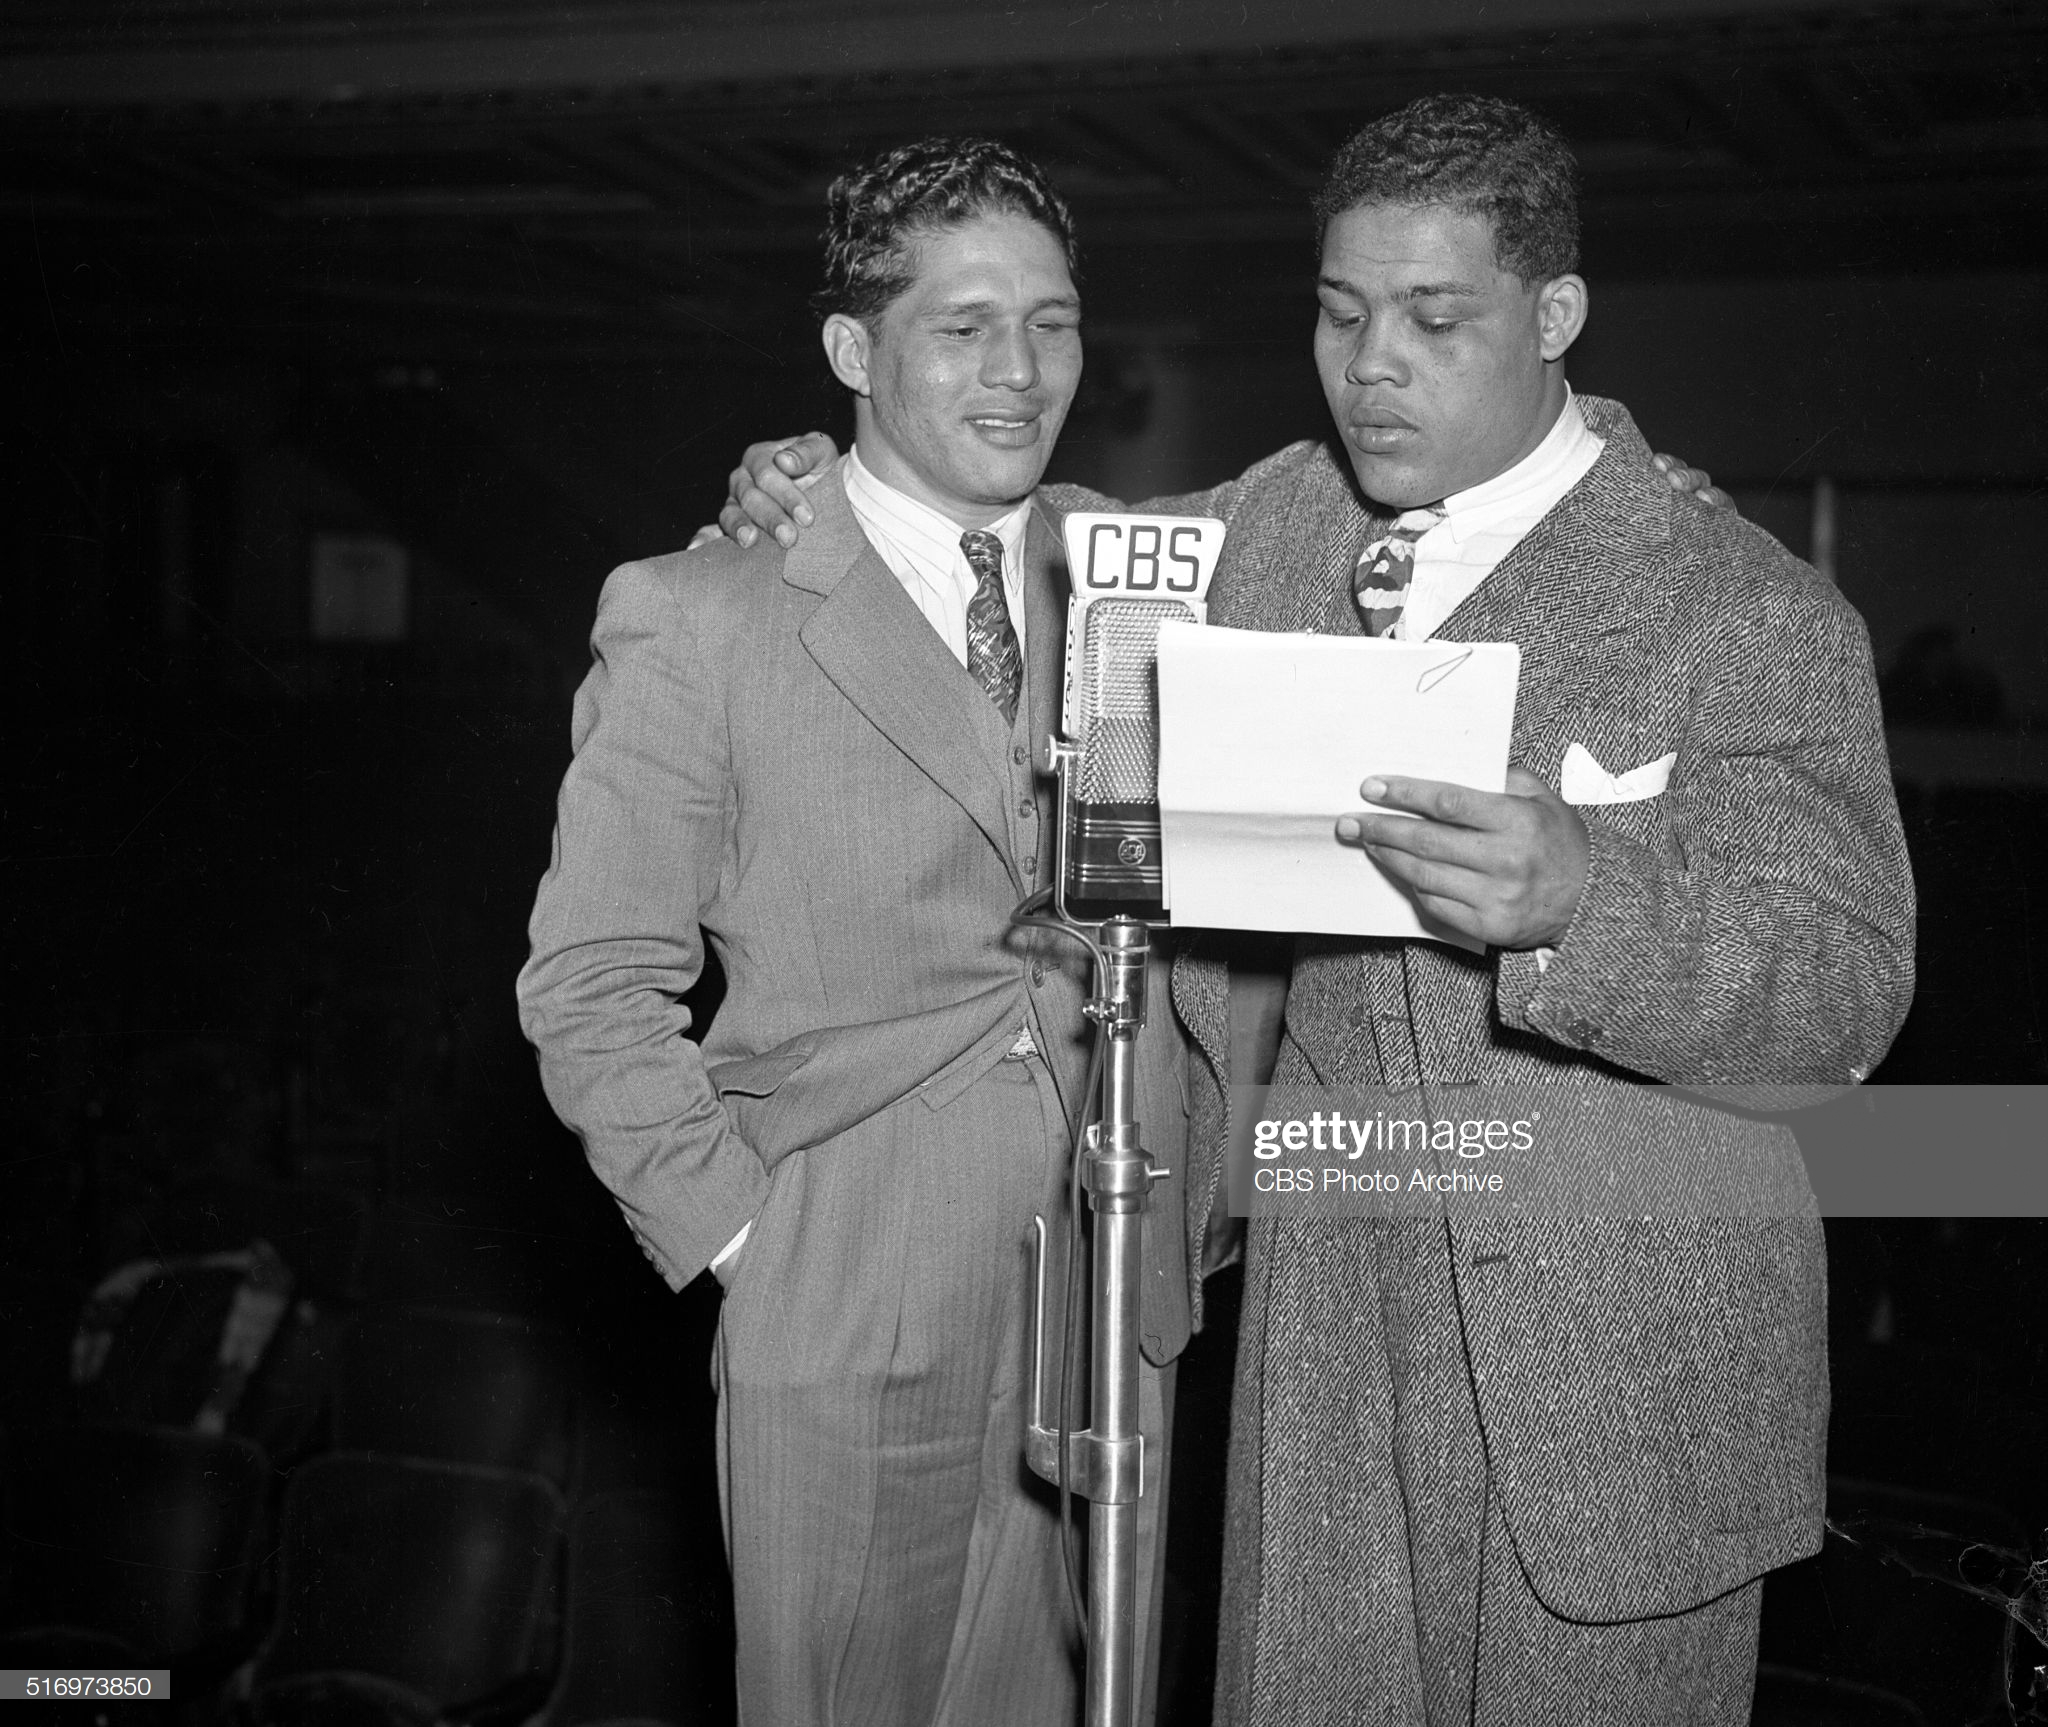 El 13 de febrero de 1940, Louis y Godoy fueron hasta los estudios de la CBS para comentar la pelea y hacer gala de su amistad.